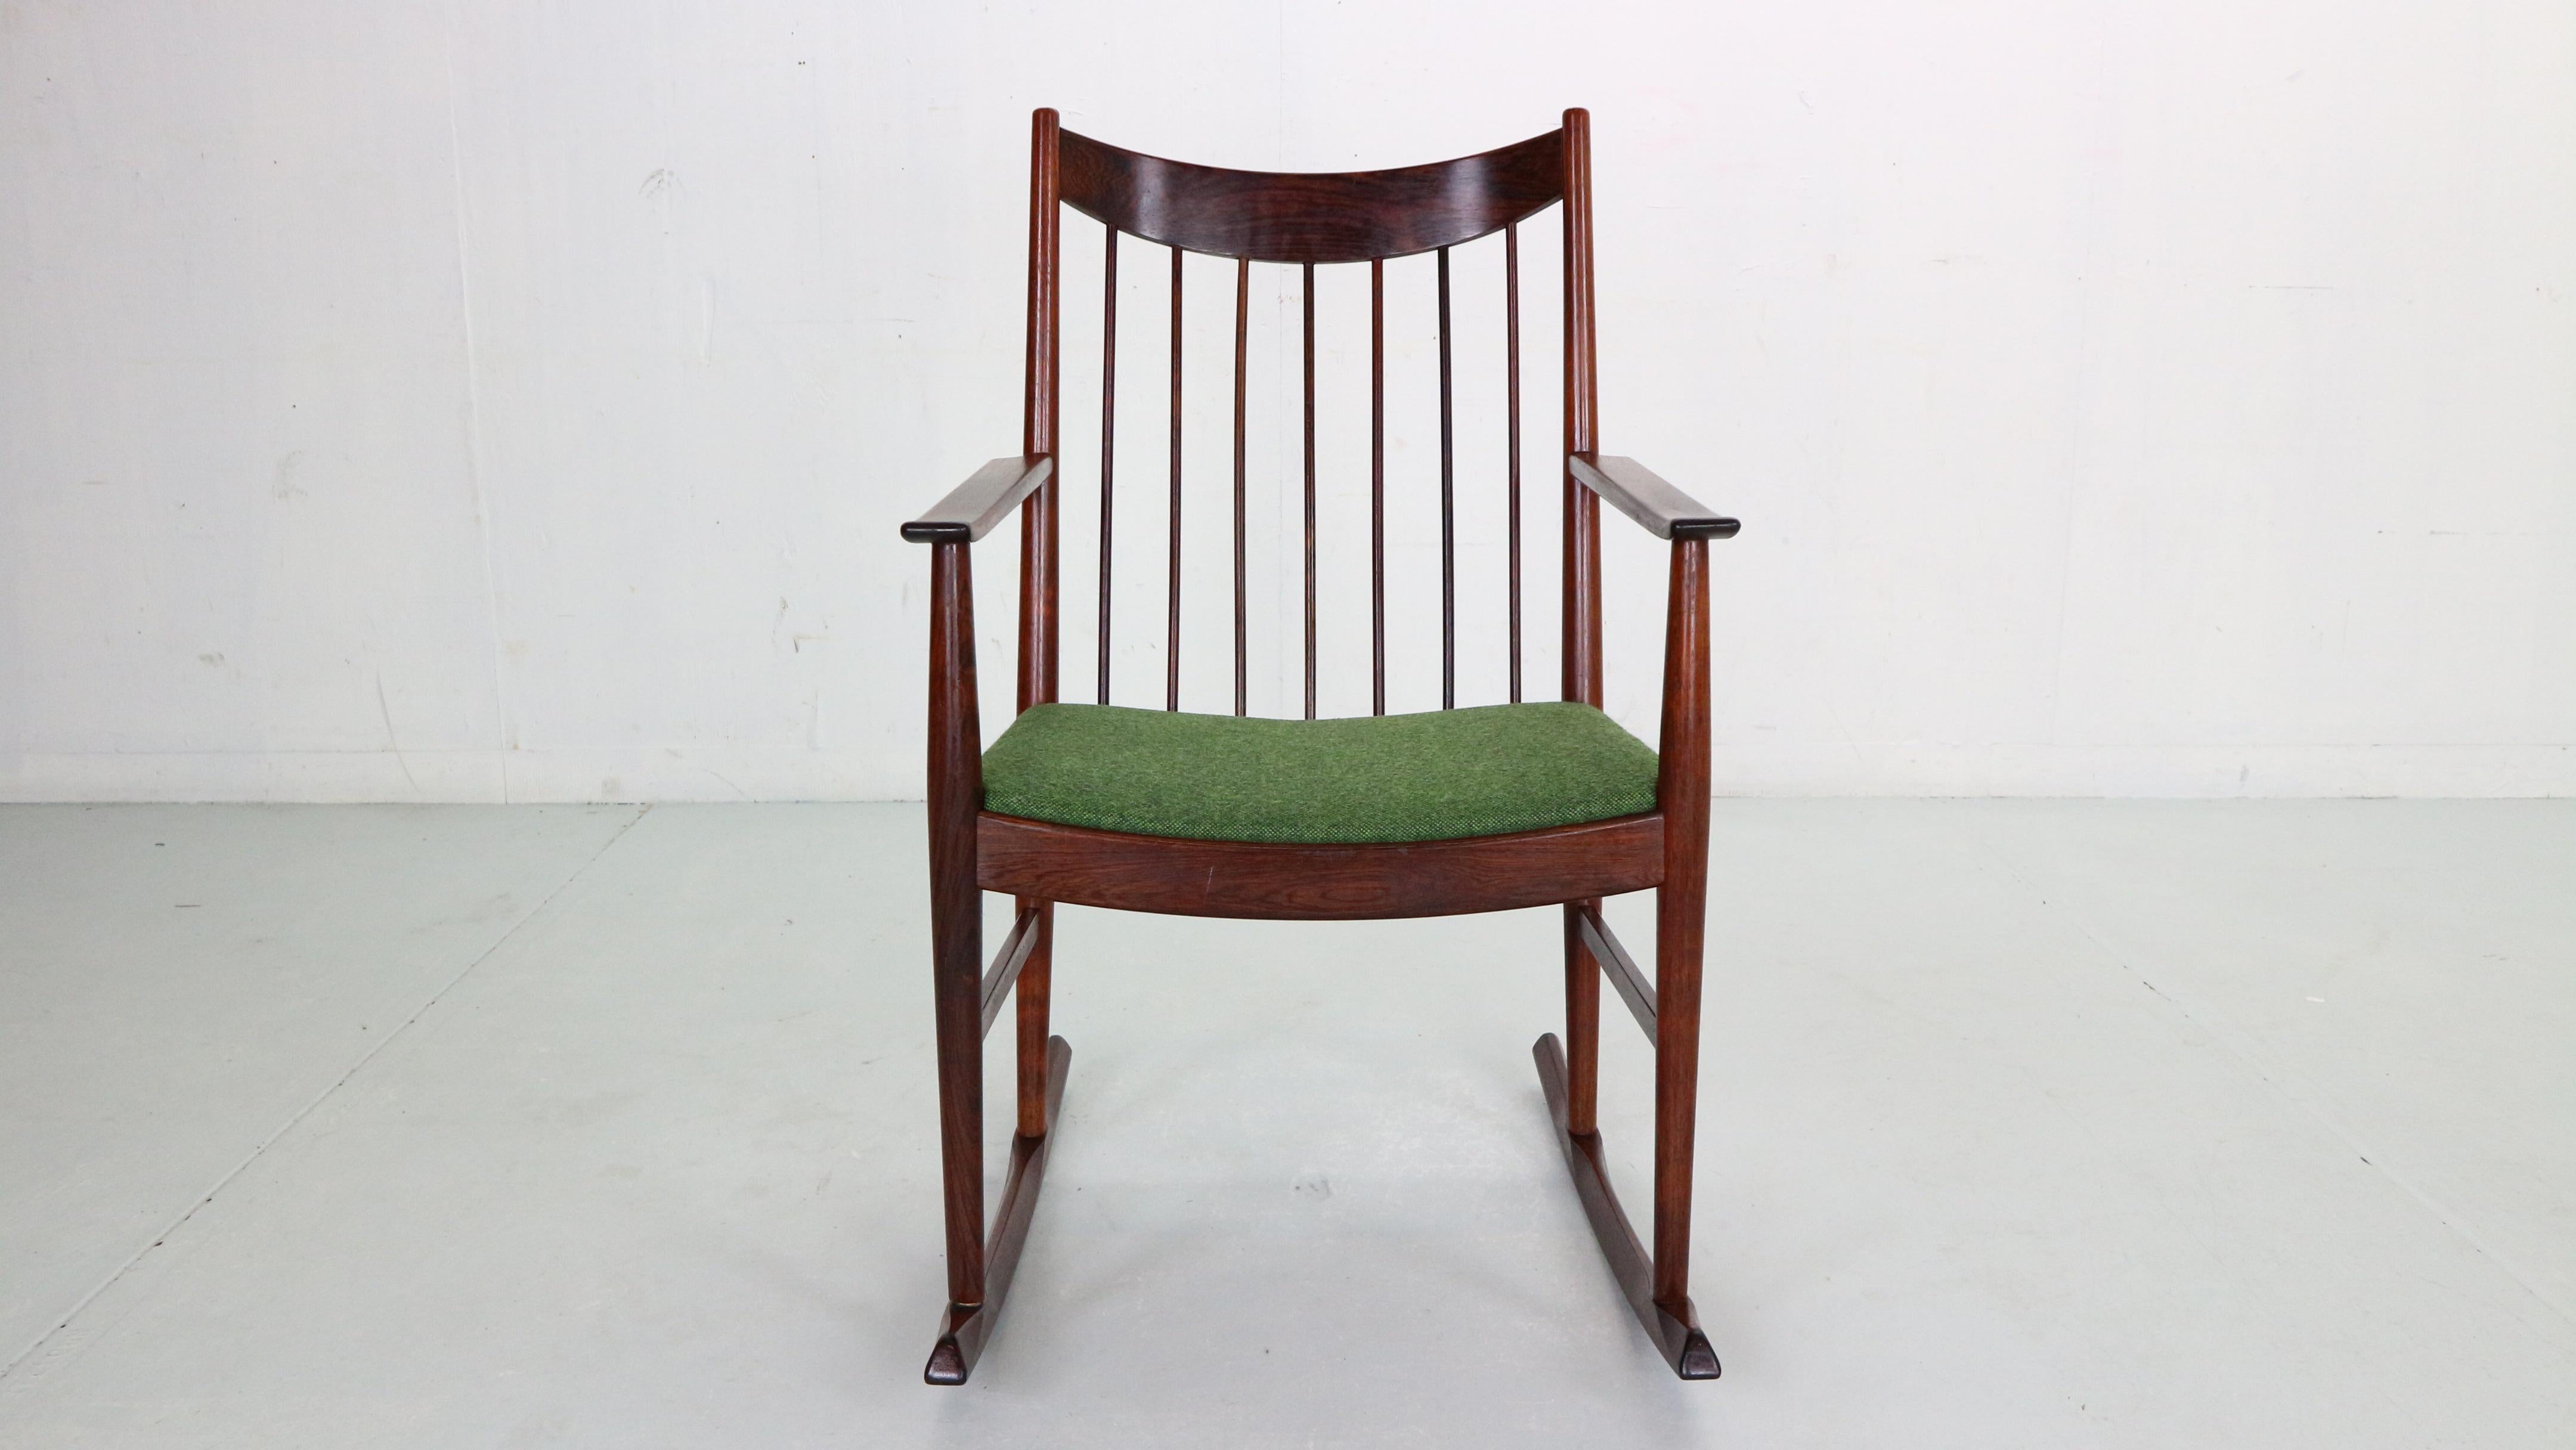 Danish Arne Vodder Rocking Chair for Sibast, 1960s, Denmark For Sale